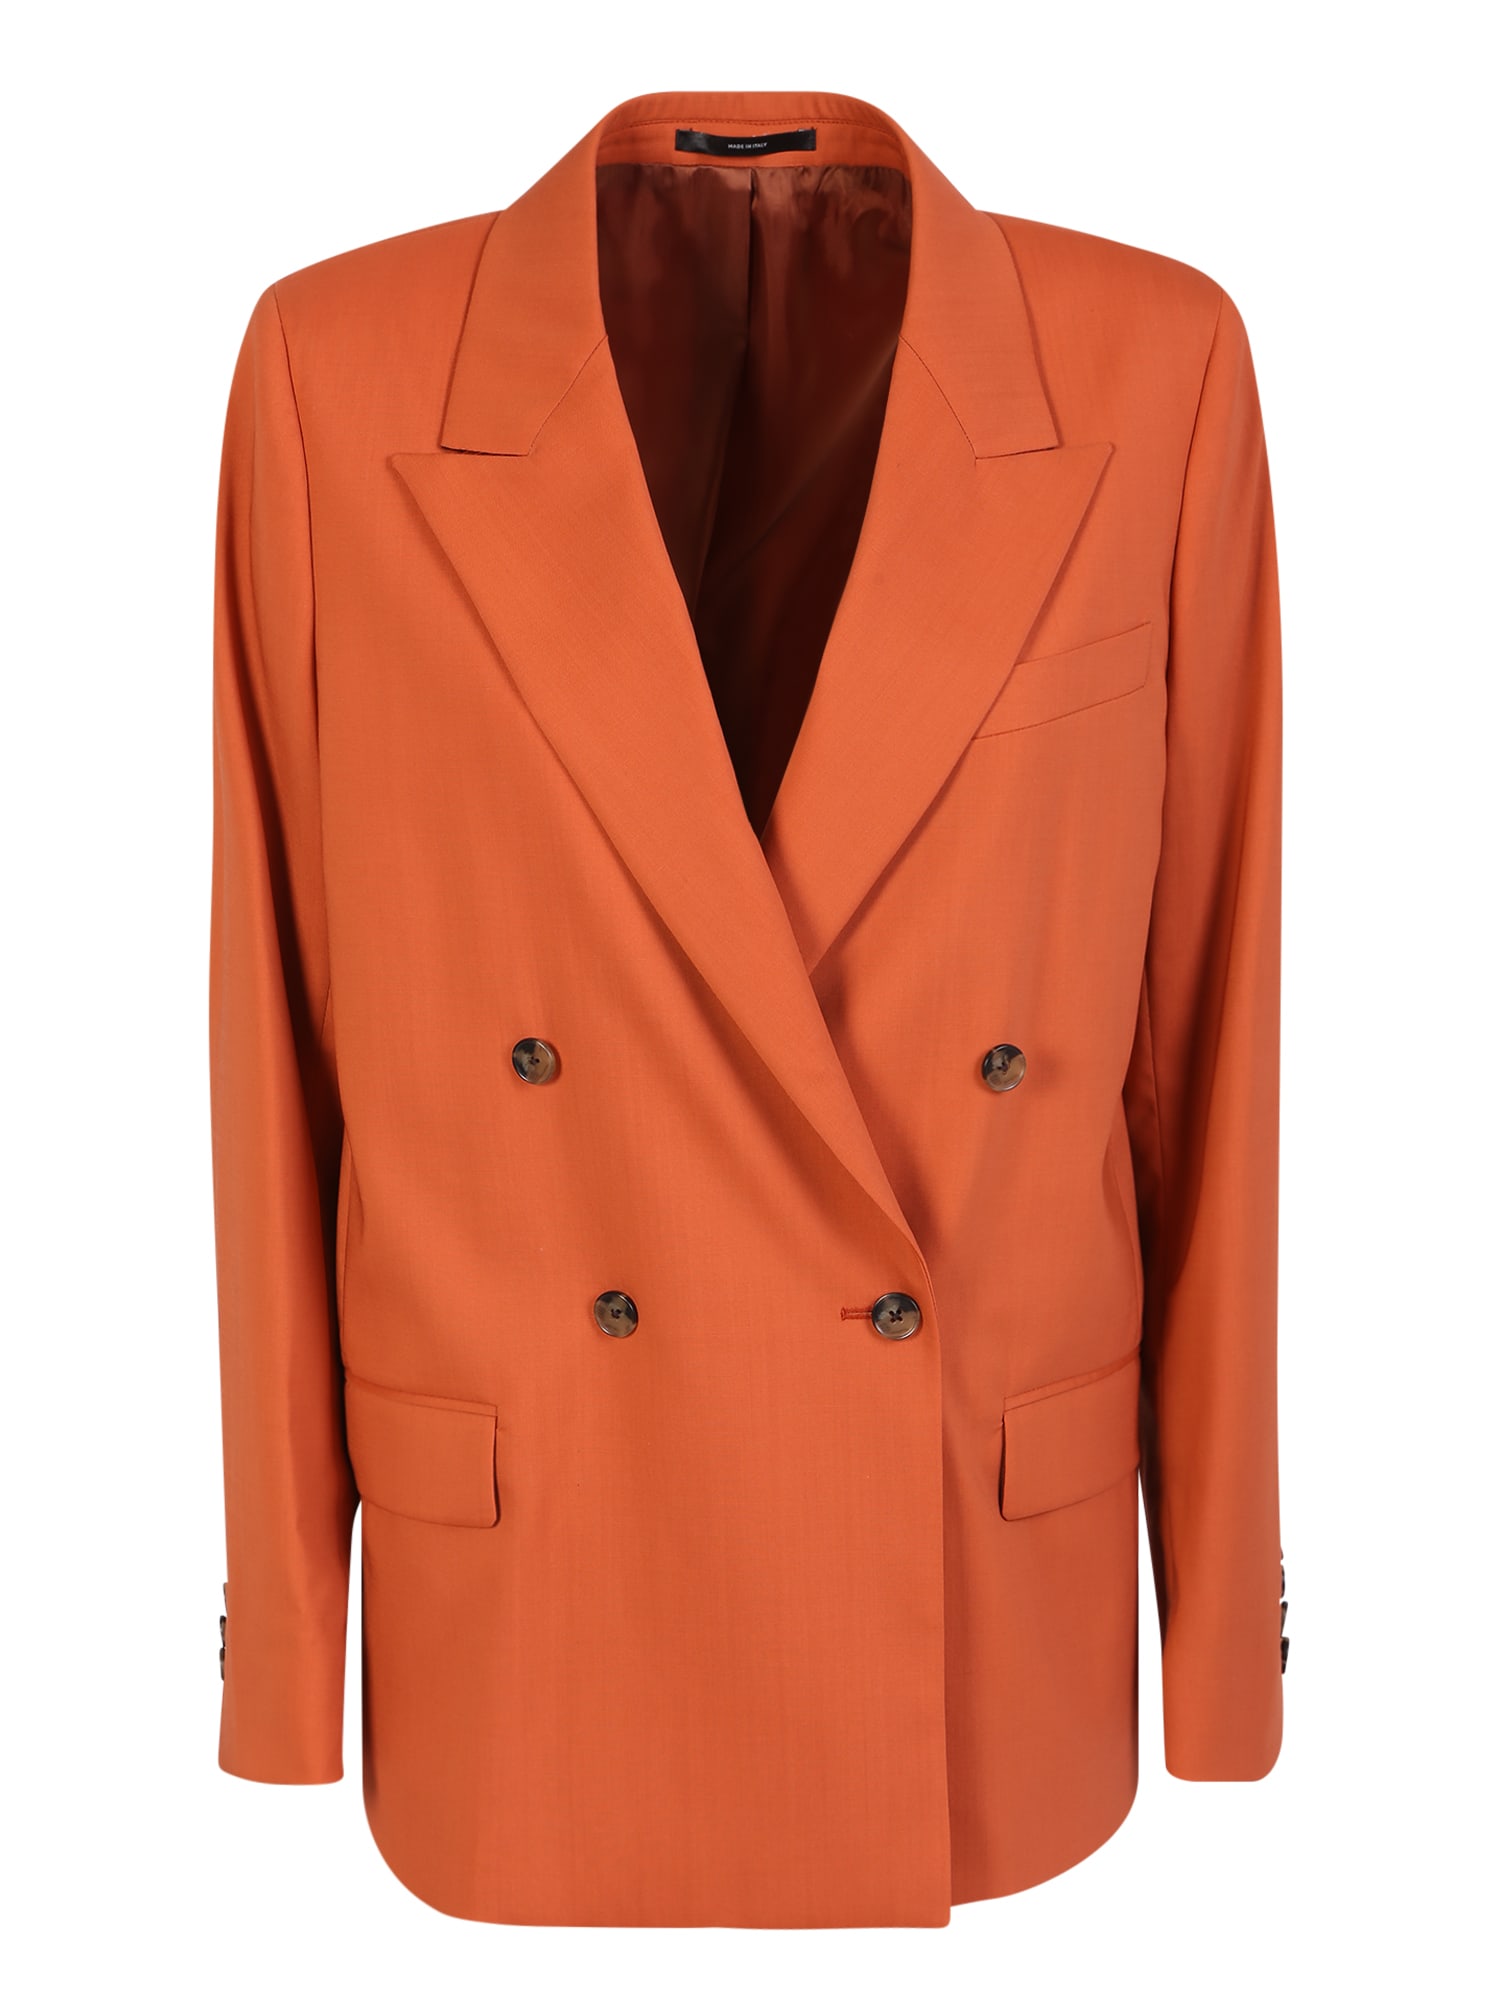 Paul Smith Orange Double-breasted Jacket